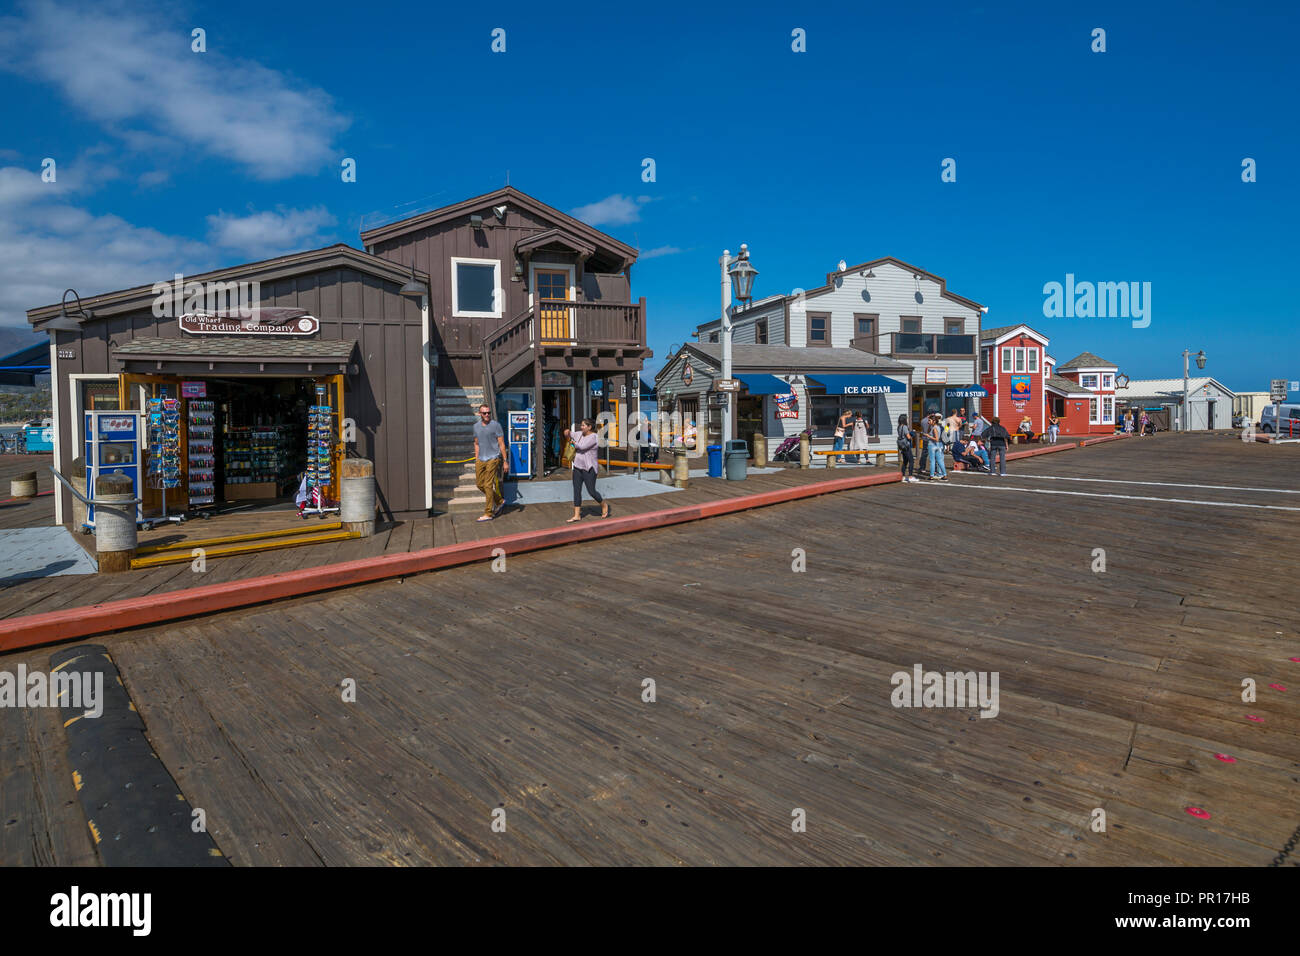 Avis de boutiques sur Stearns Wharf, Santa Barbara, Santa Barbara County, Californie, États-Unis d'Amérique, Amérique du Nord Banque D'Images